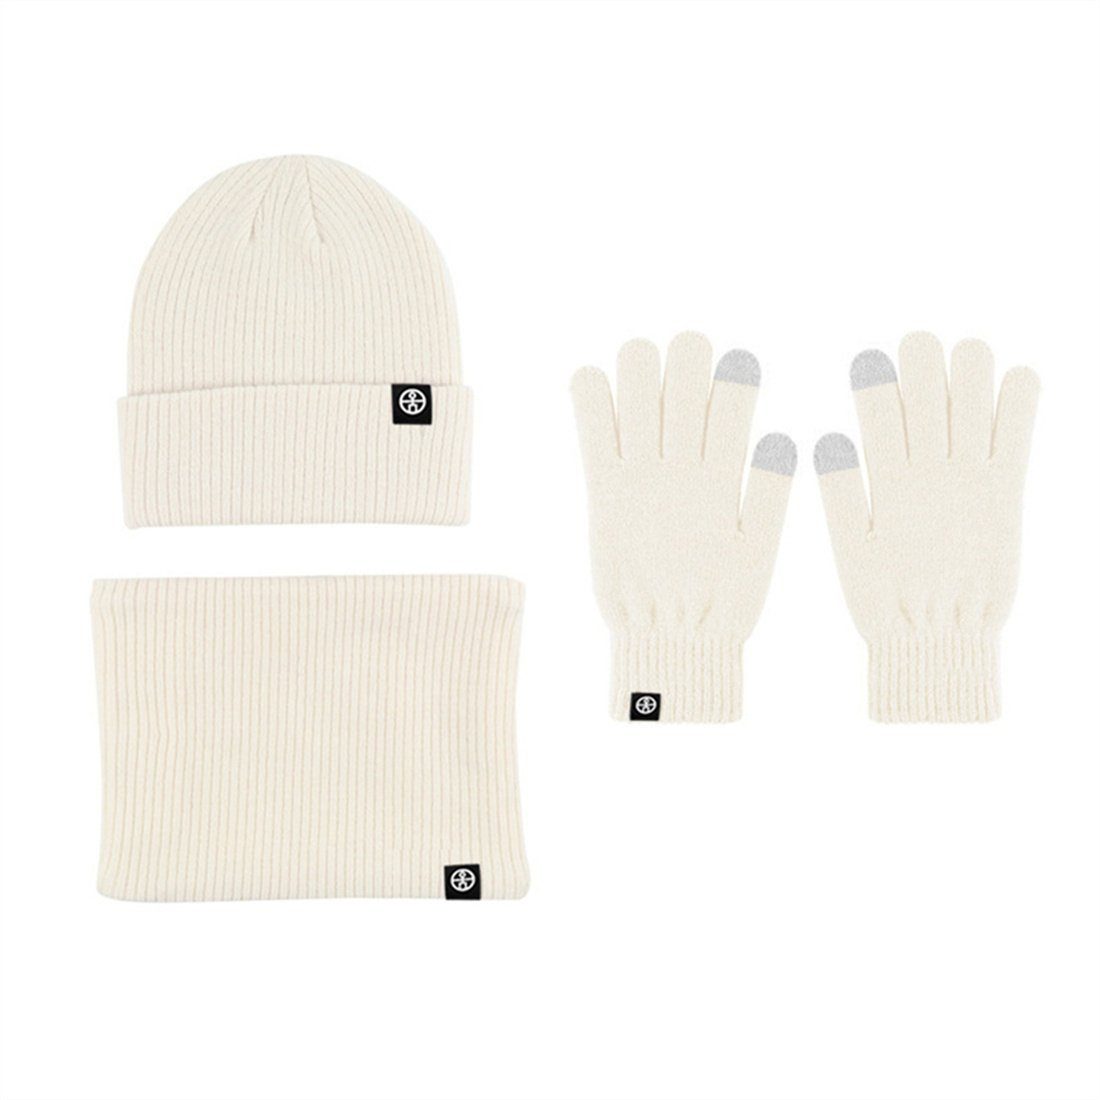 Strickmütze DÖRÖY Piece Winter Set, + Handschuhe Schal + Warmth Strickmütze 3 Unisex Beige